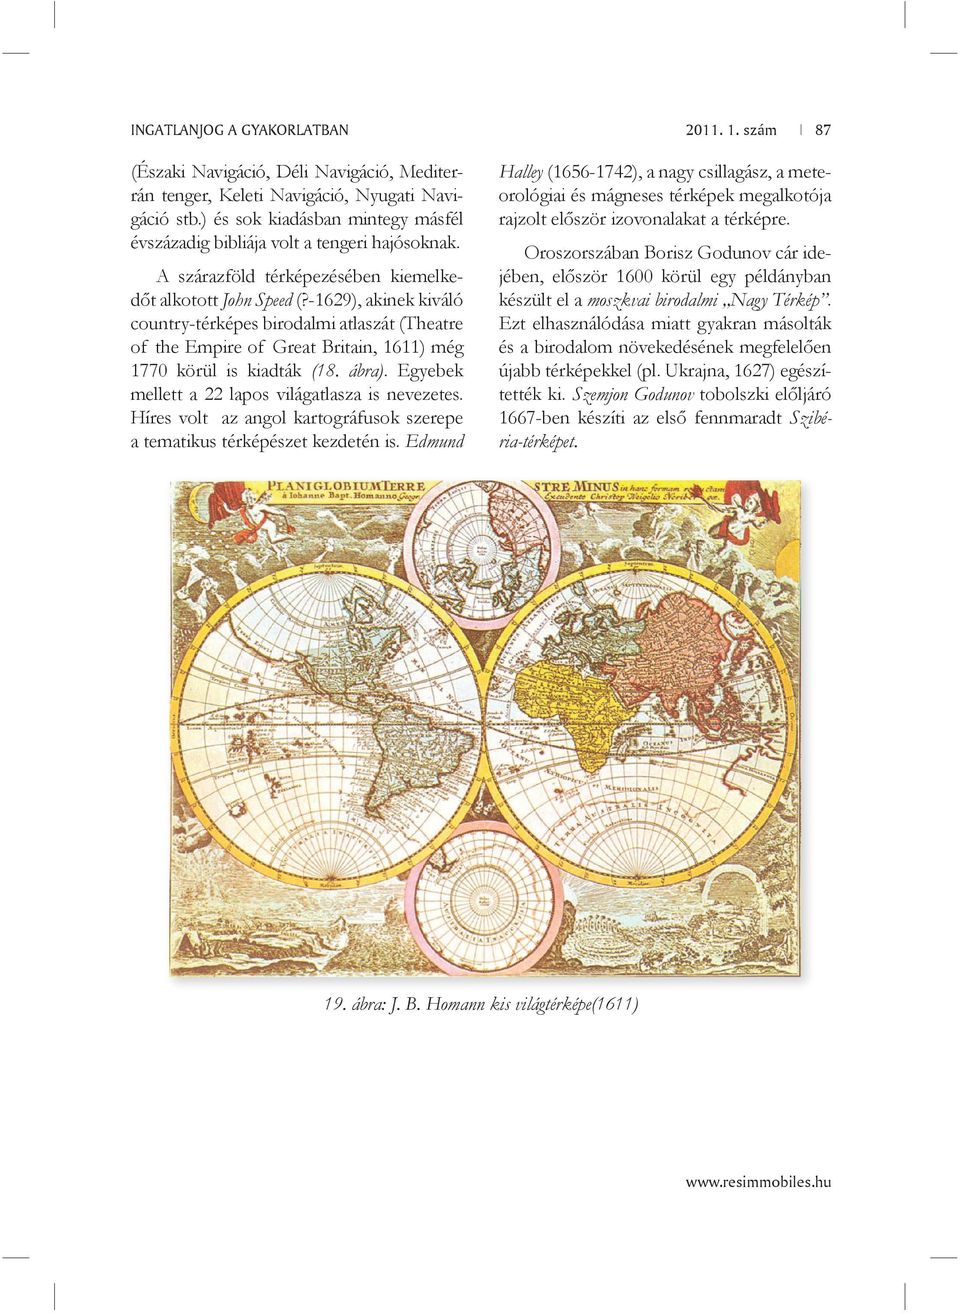 -1629), akinek kiváló country-térképes birodalmi atlaszát (Theatre of the Empire of Great Britain, 1611) még 1770 körül is kiadták (18. ábra). Egyebek mellett a 22 lapos világatlasza is nevezetes.